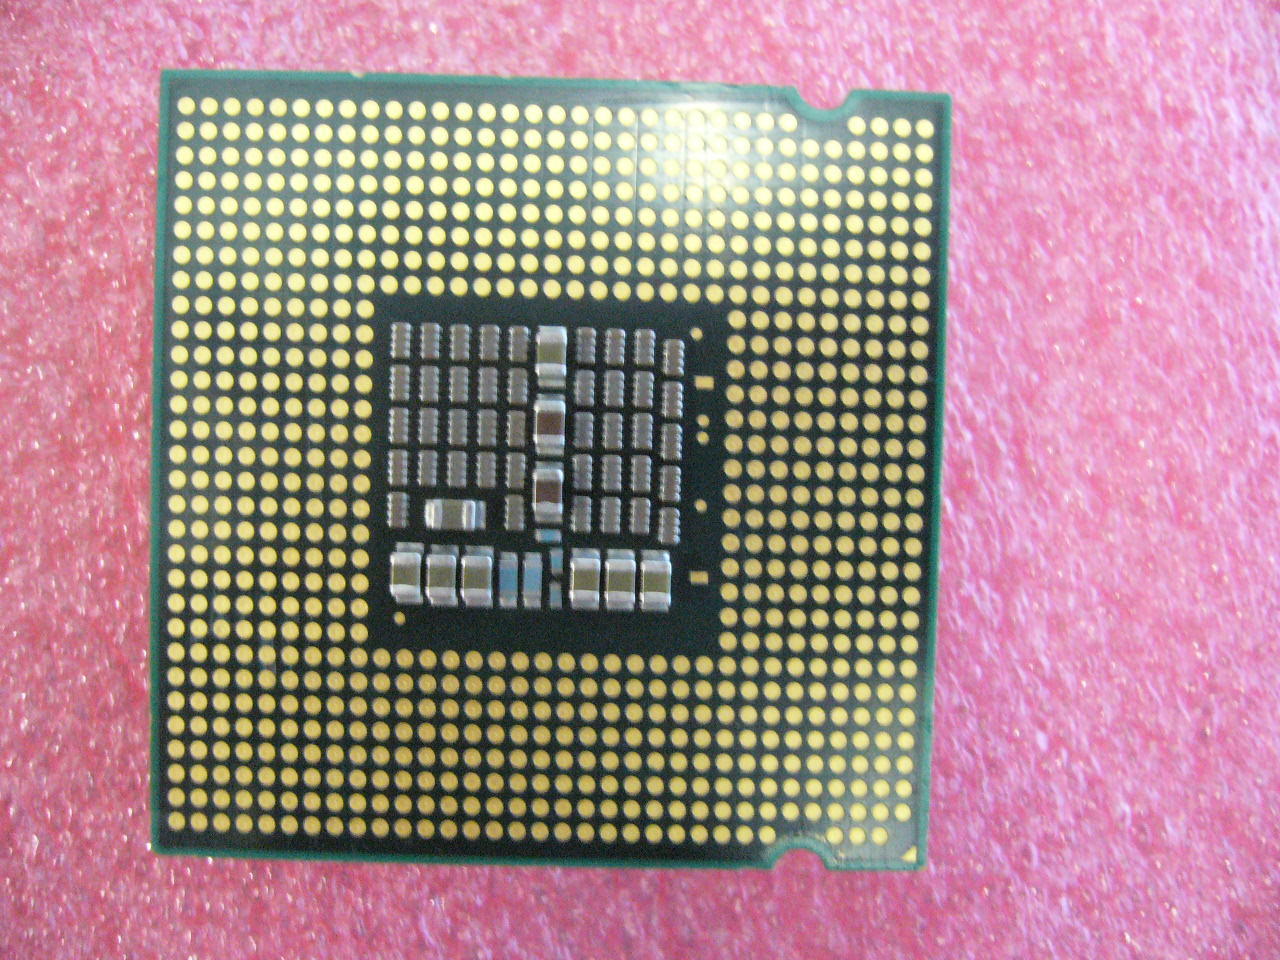 QTY 1x INTEL Core2 Extreme QX6700 CPU 2.66GHz/8MB/1066Mhz LGA775 SL9UL - Click Image to Close